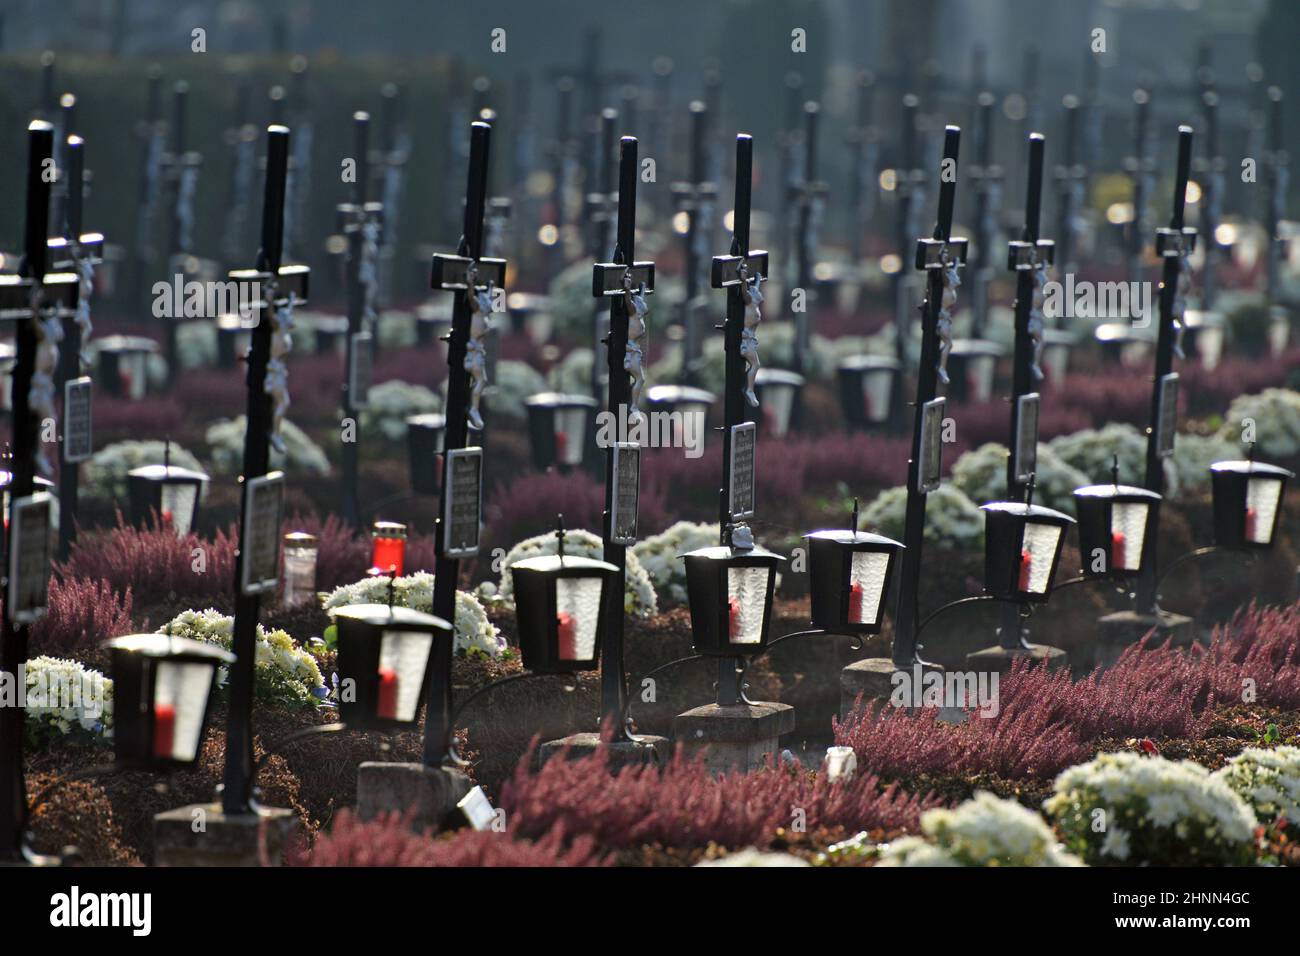 Grabkreuze in einer Reihe auf dem Friedhof Wels, Österreich, Europa - Grave crosses in a row in the cemetery Wels, Austria, Europe Stock Photo